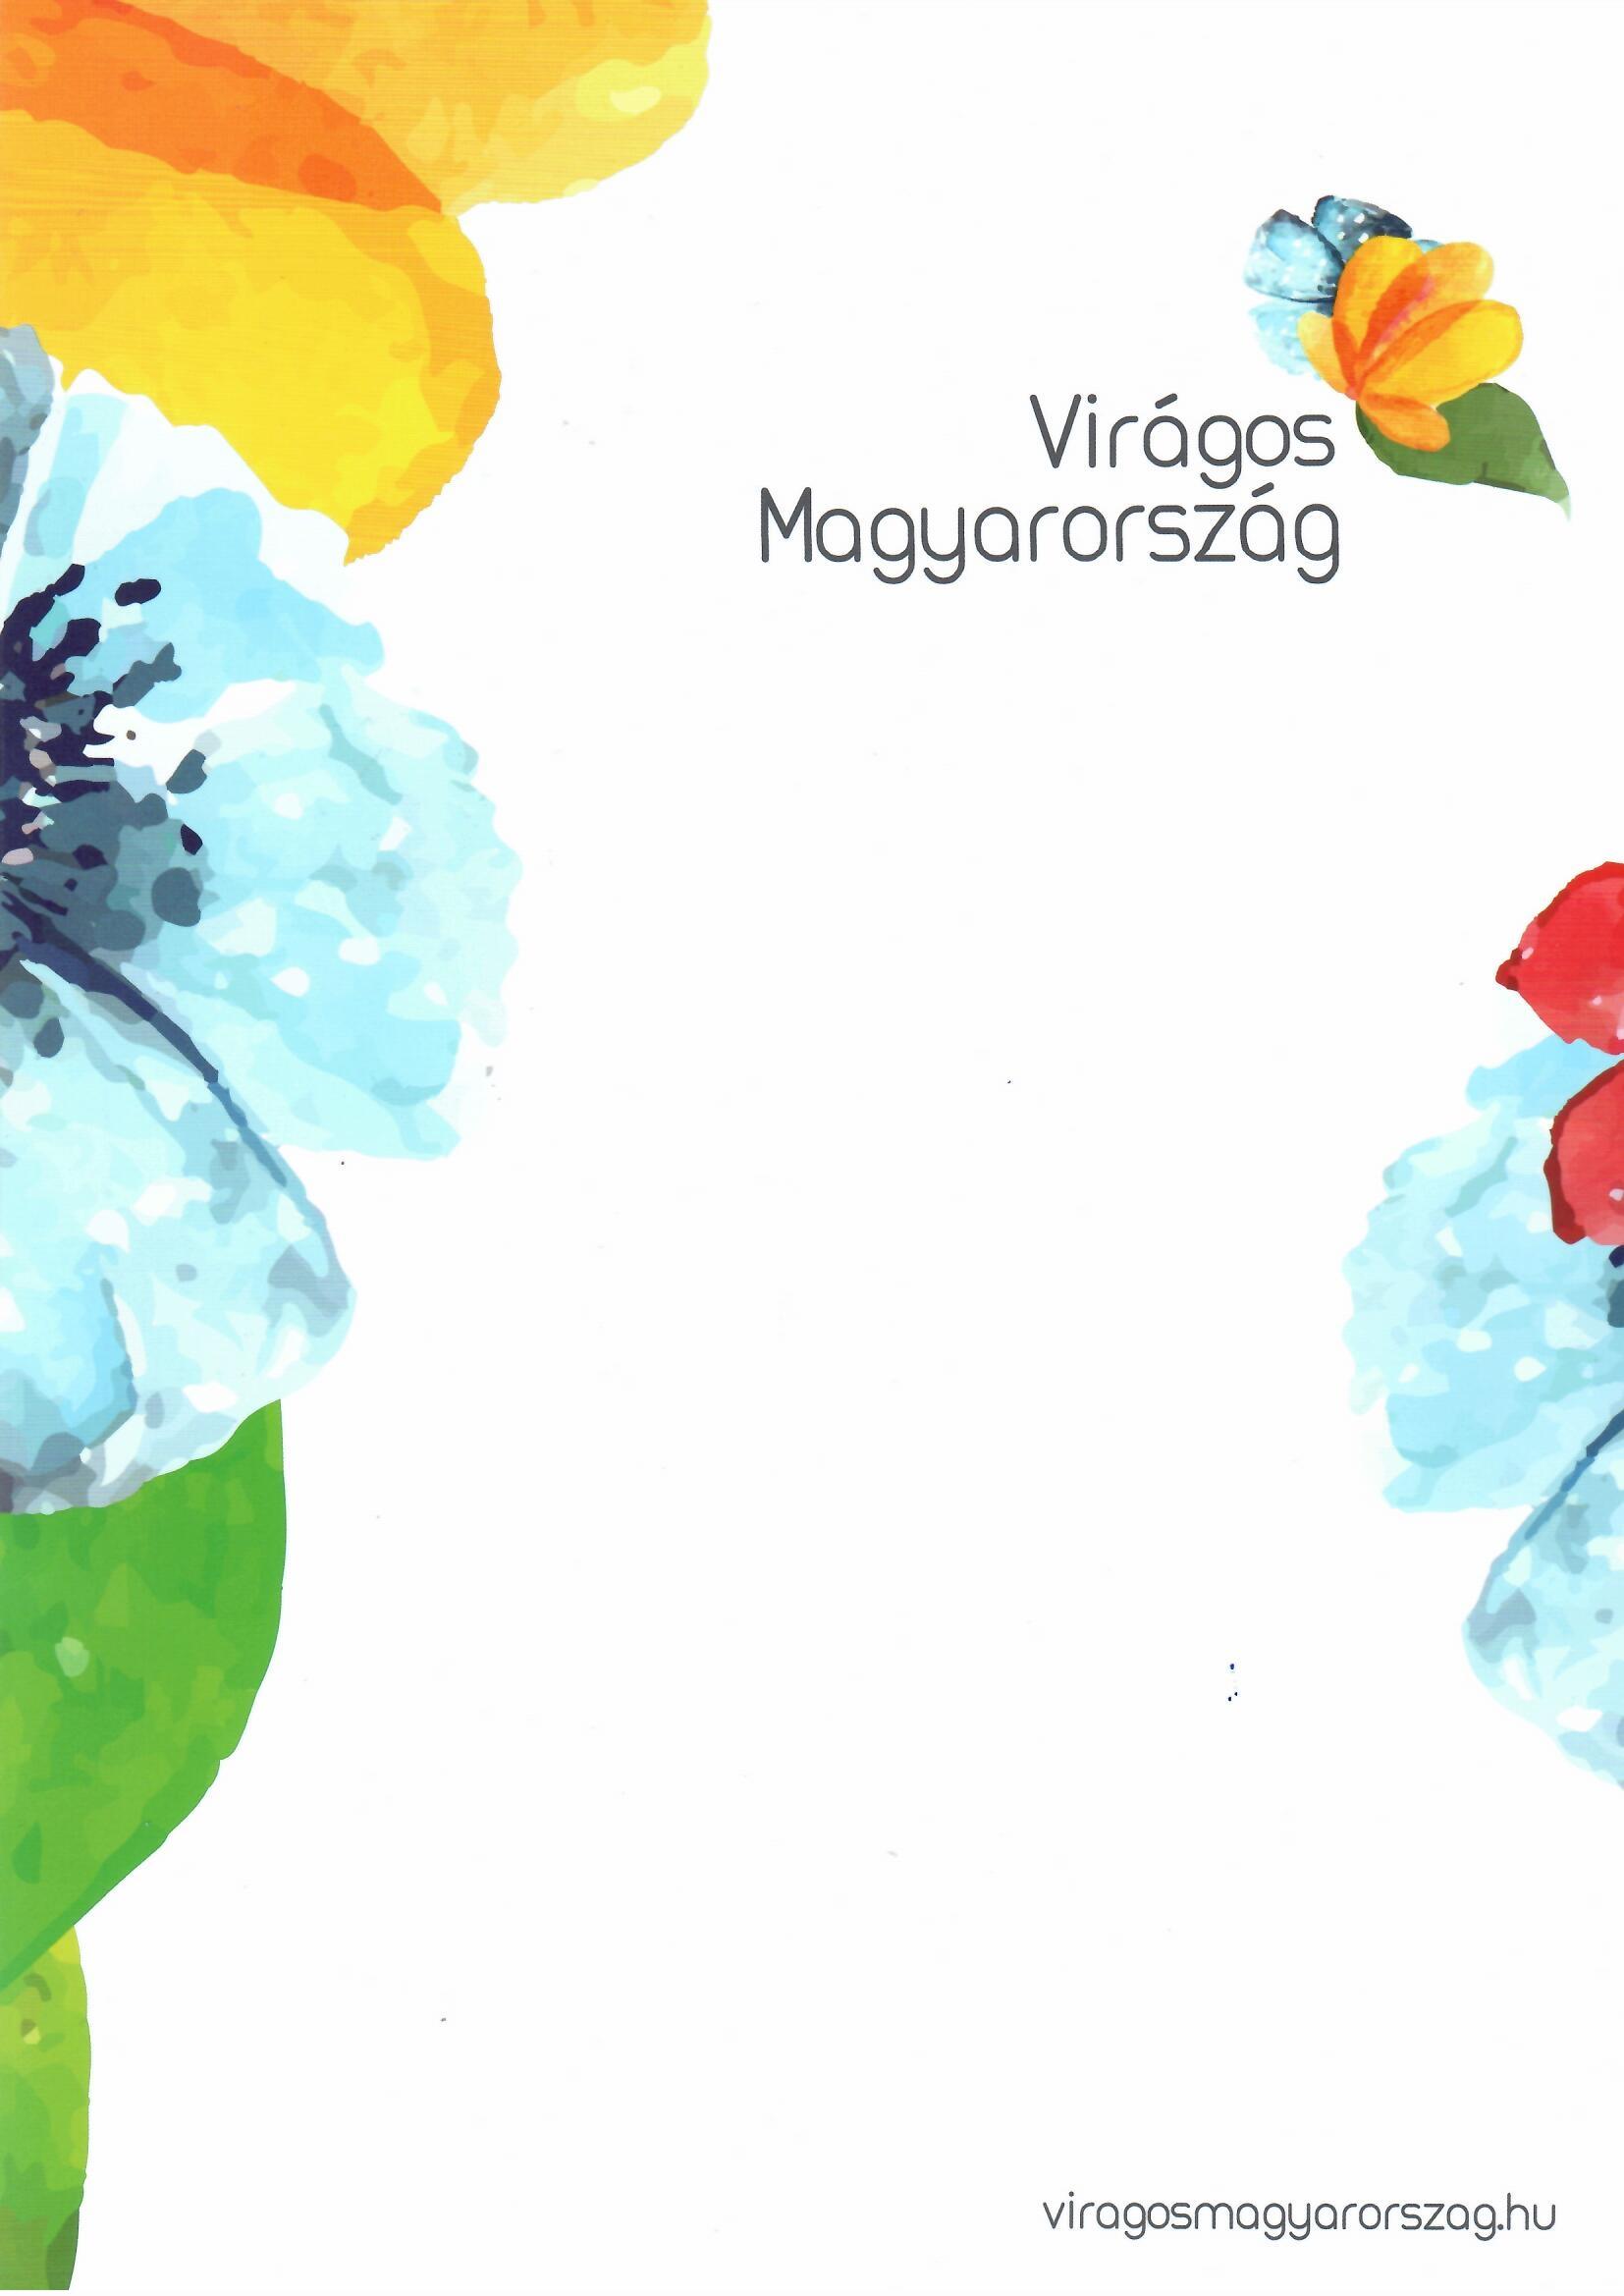 Viragos 2 Virágos Magyarország Települési Pályázat